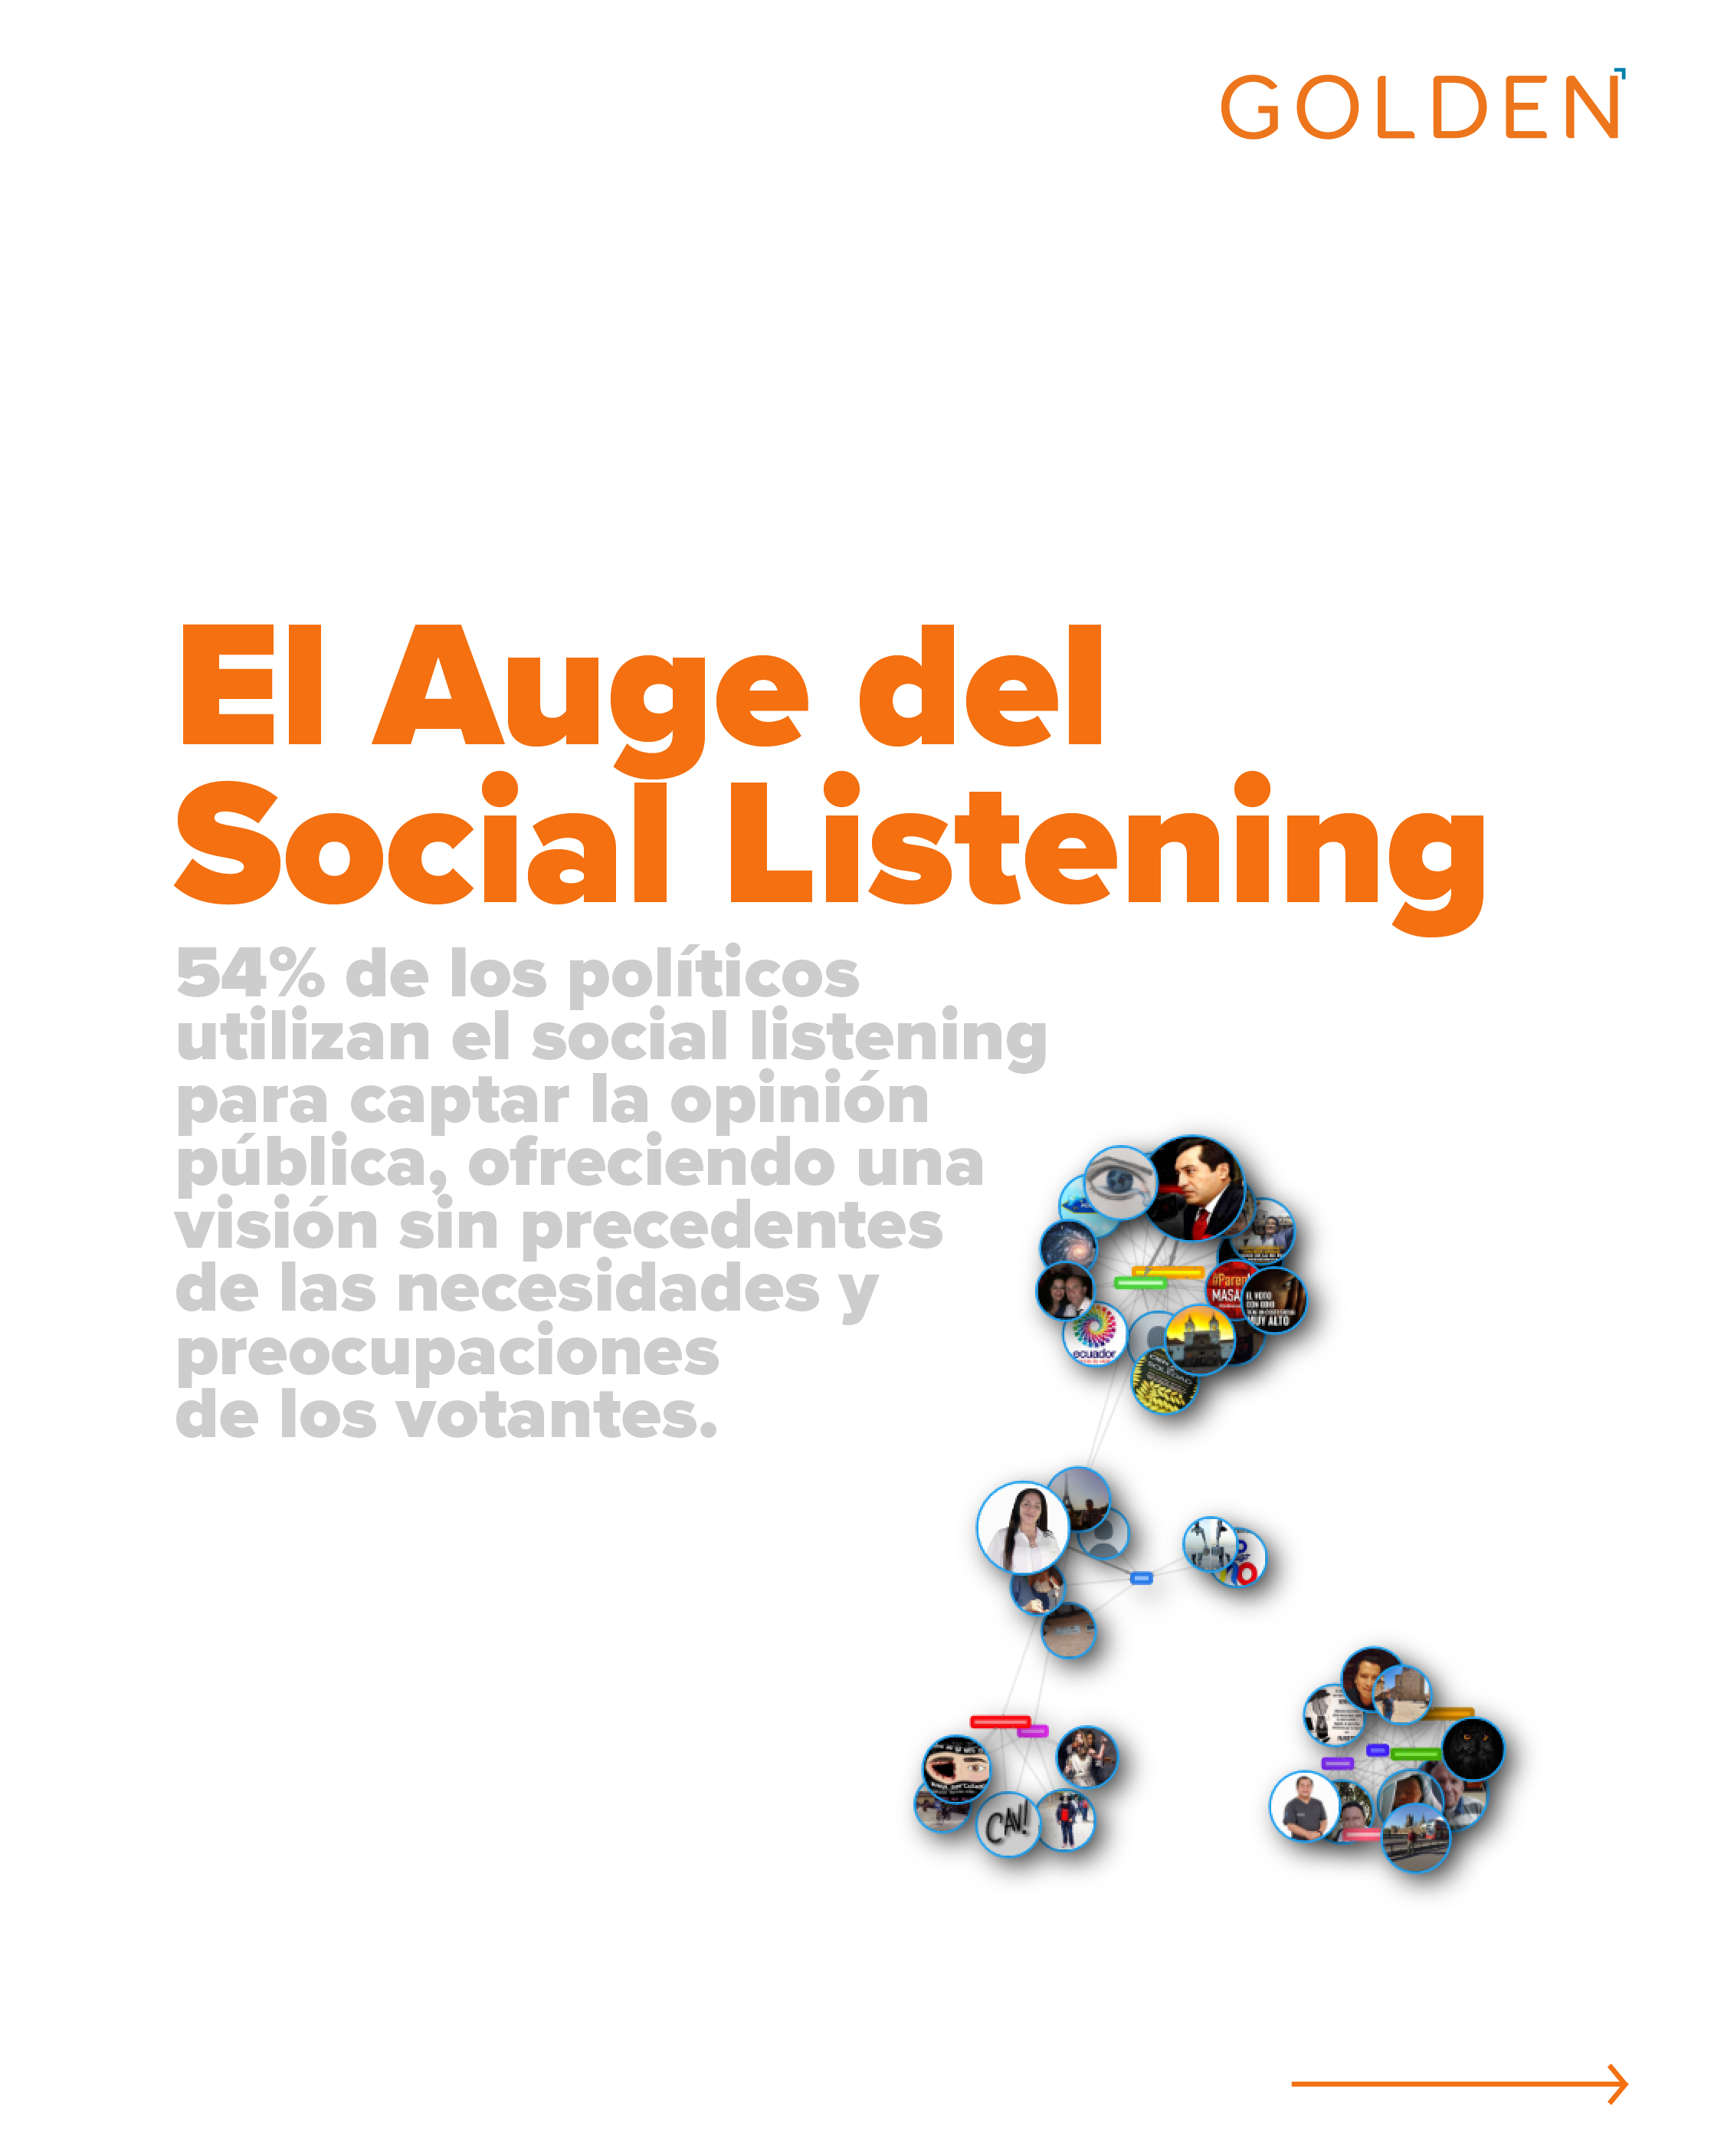 Social Listening en Política